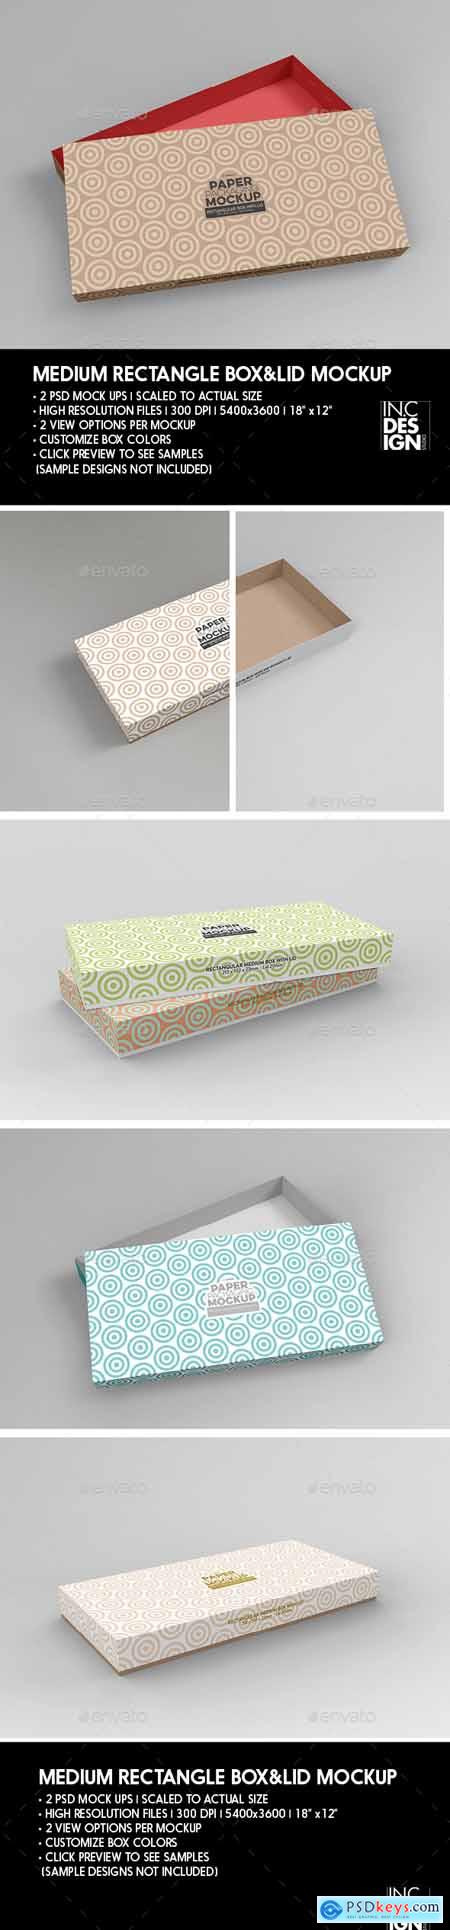 Medium Rectangular Paper Box and Lid Packaging Mockup 26651000